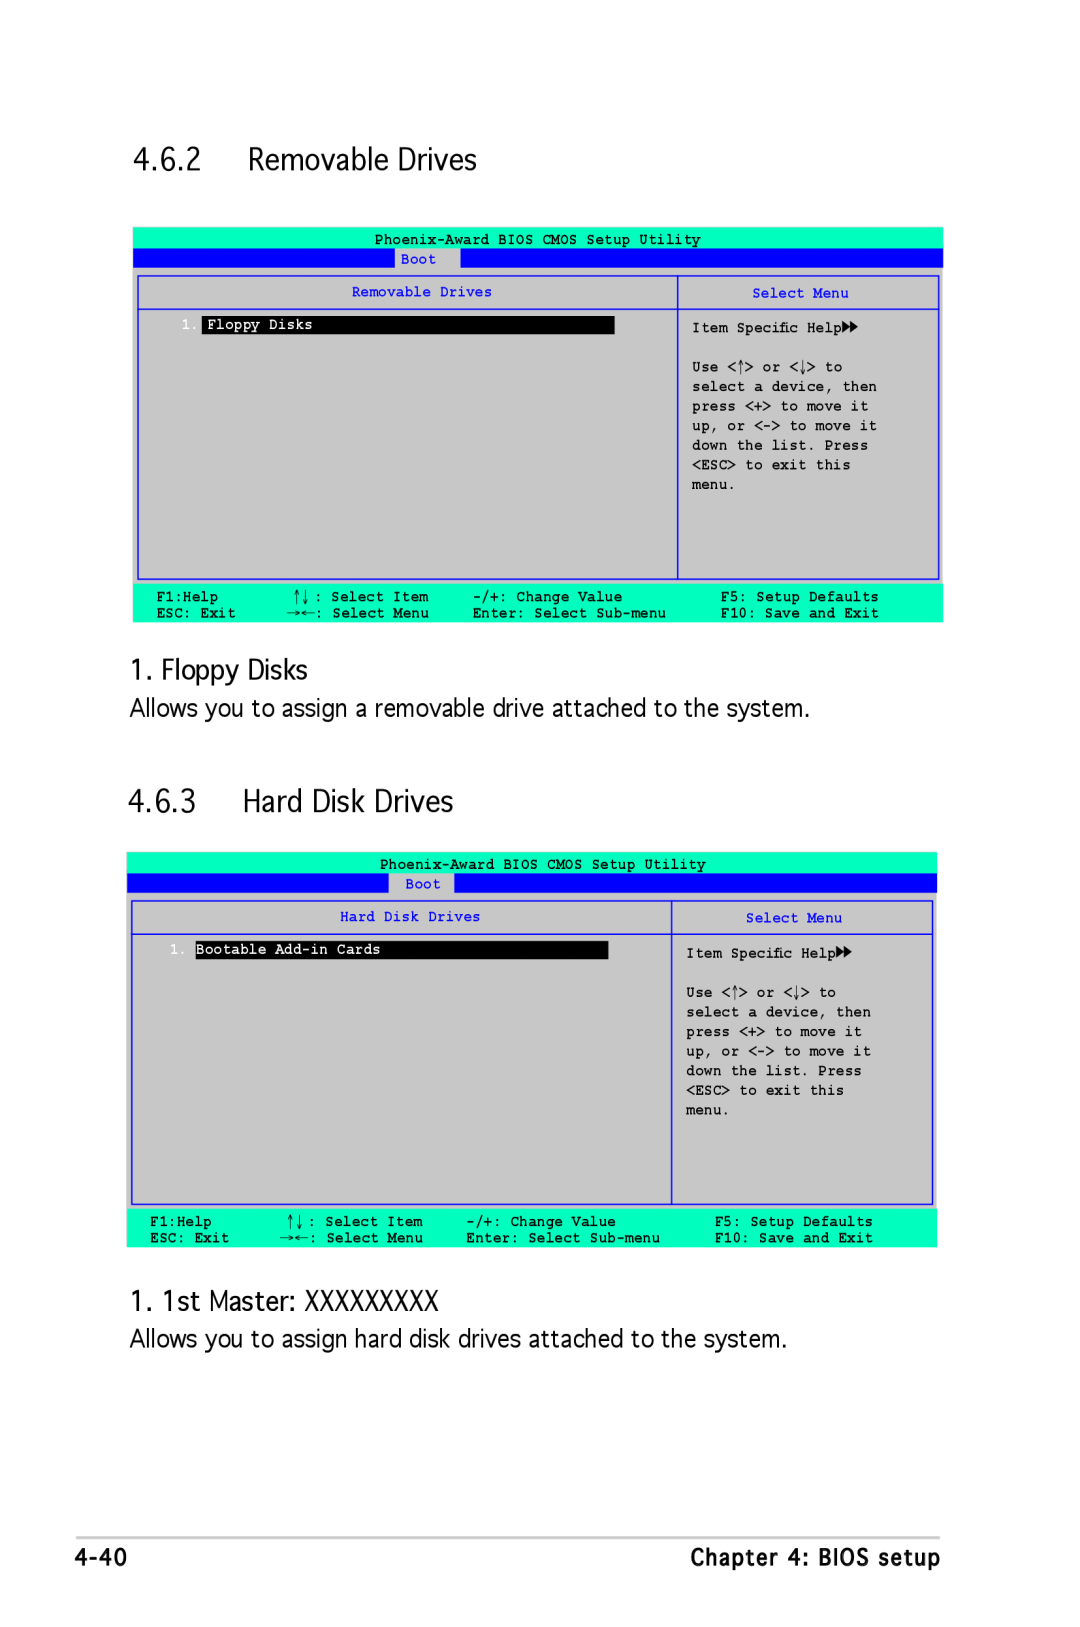 Asus A8N-SLI SE manual Removable Drives, Hard Disk Drives, Floppy Disks, 1. 1st Master 